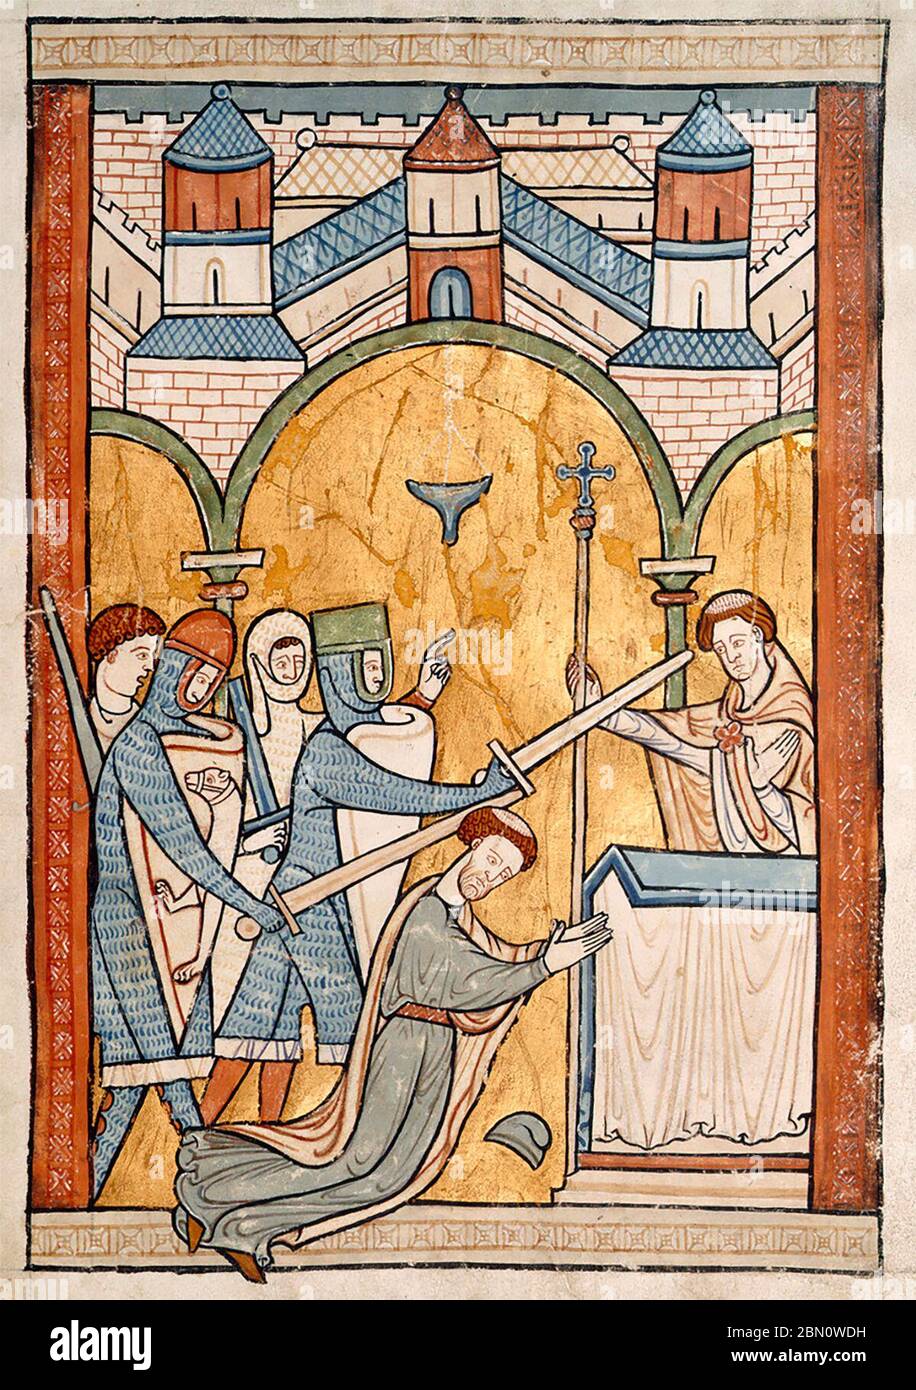 Eine handschriftliche Buchmalerei aus dem 13. Jahrhundert, die früheste bekannte Darstellung von Thomas Becket' Ermordung in der Kathedrale von Canterbury, um 1200 Stockfoto